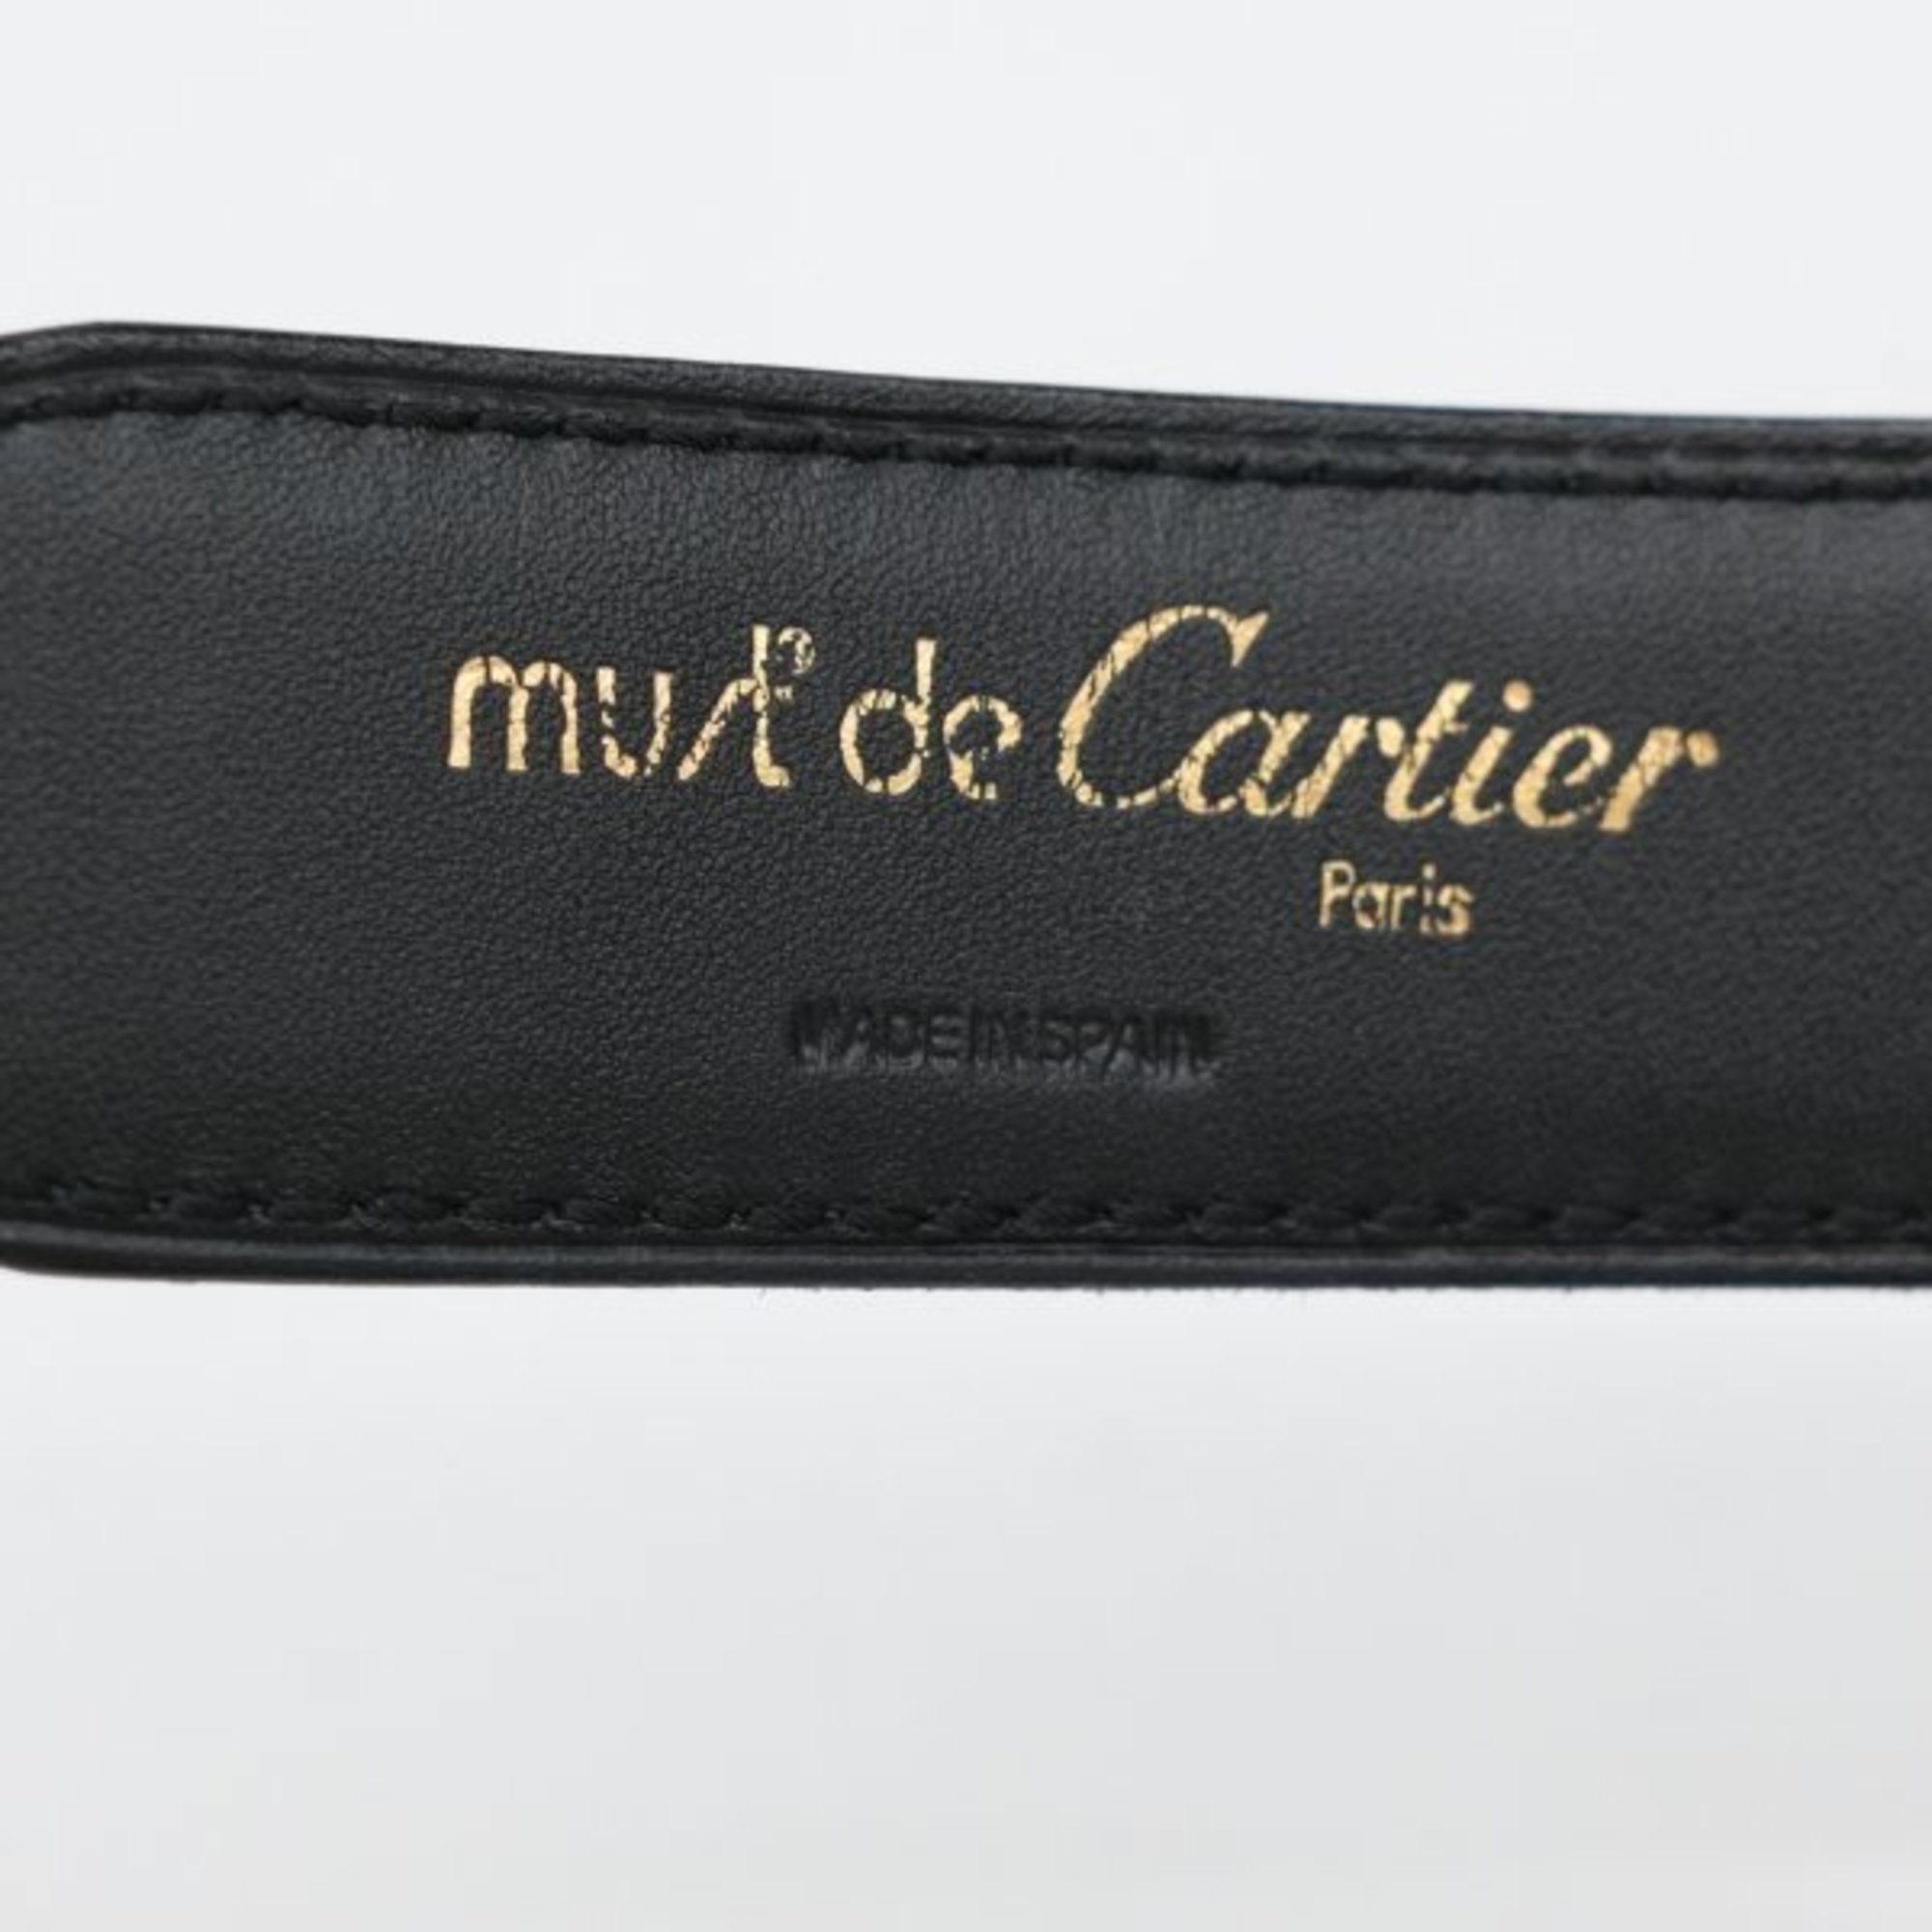 Cartier C Buckle Belt Black